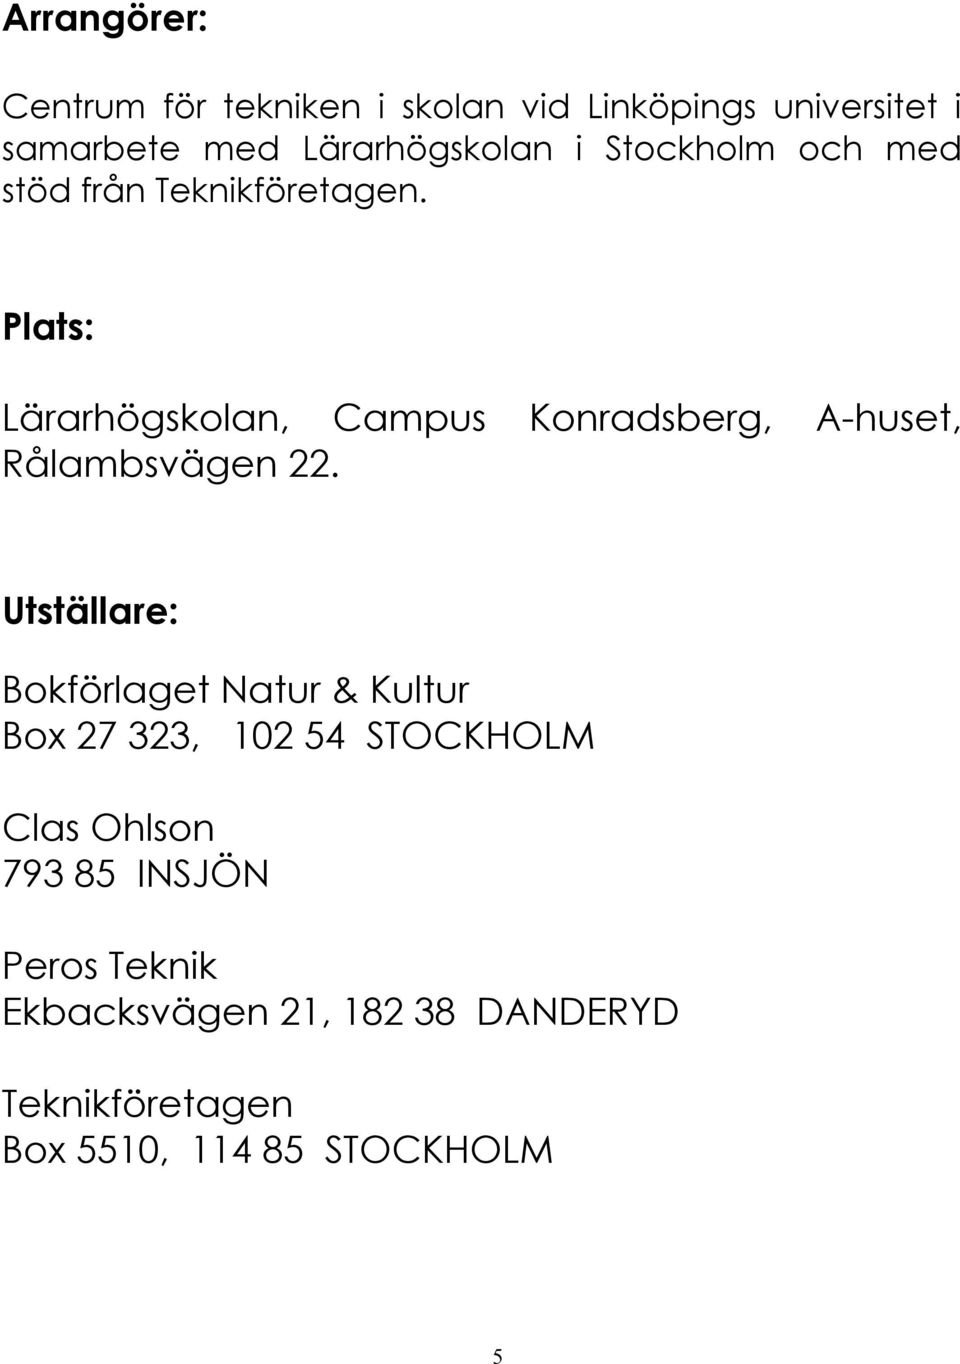 Plats: Lärarhögskolan, Campus Konradsberg, A huset, Rålambsvägen 22.